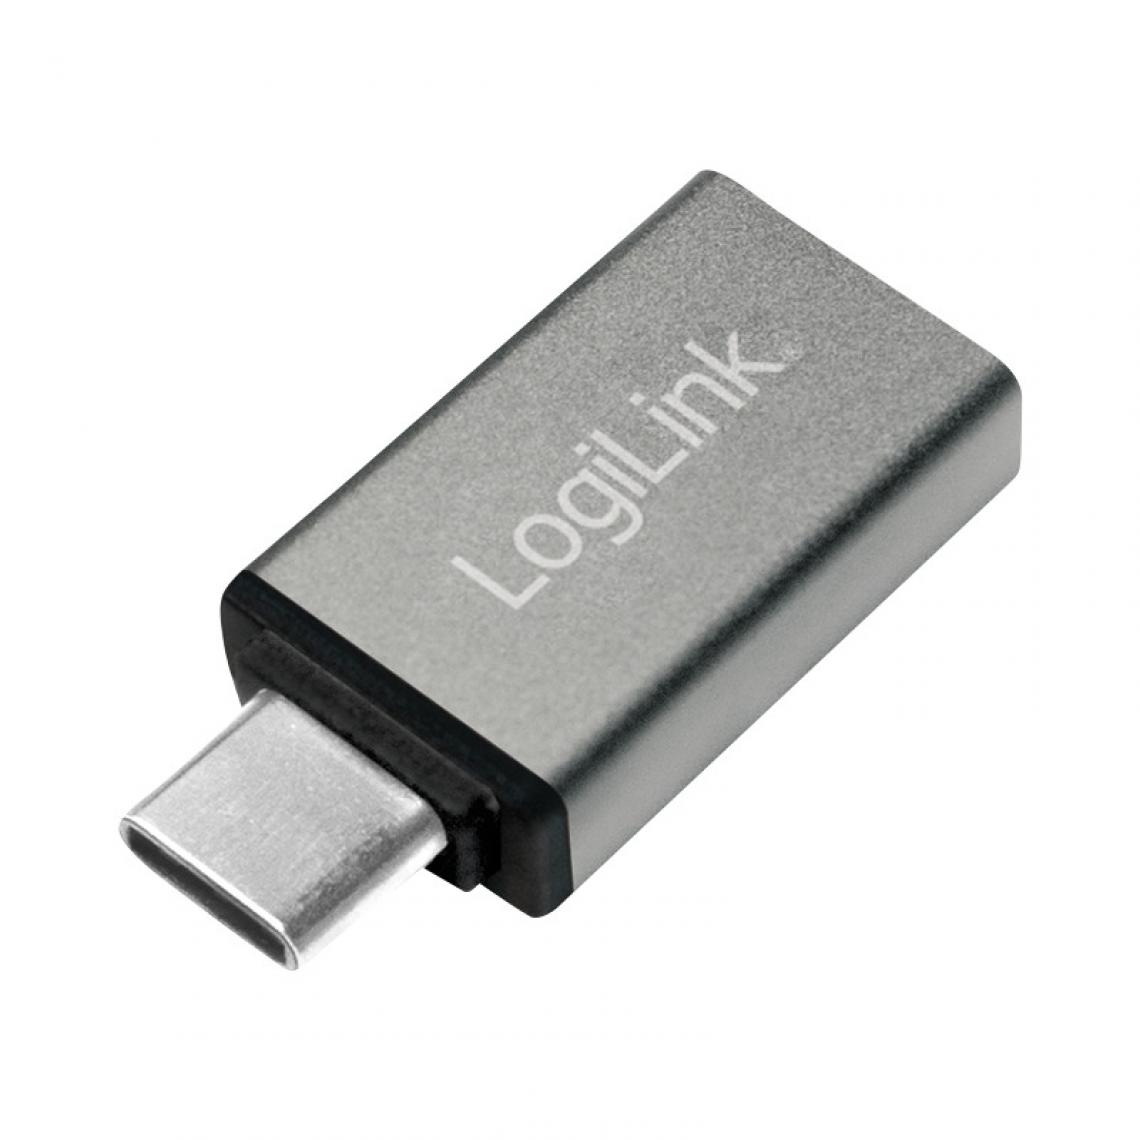 Logilink - LogiLink Adaptateur USB, USB-C mâle - USB 3.0 femelle () - Hub